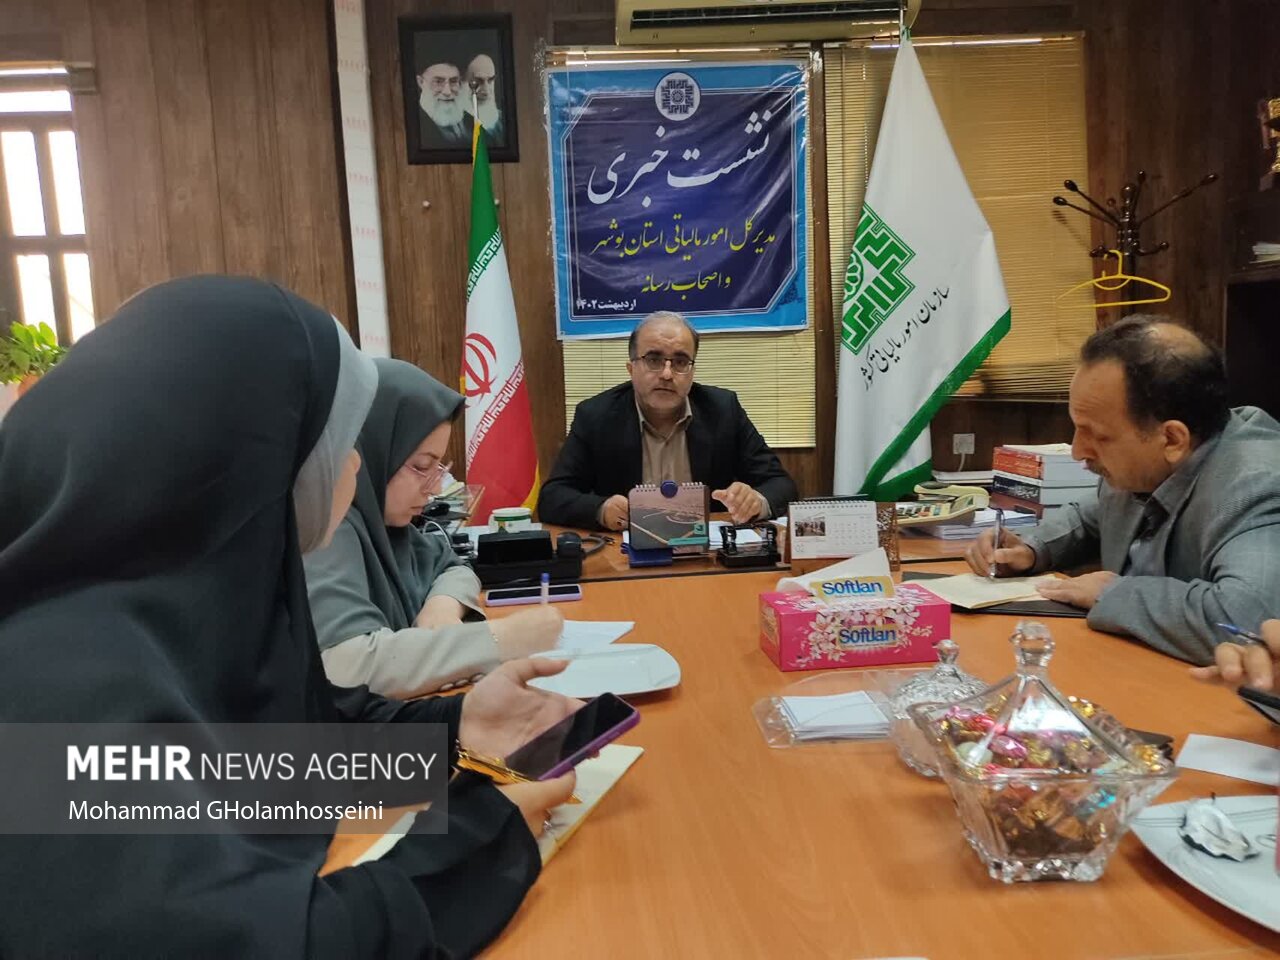 سهم ۲ درصدی استان بوشهر از مجموع درآمدهای مالیاتی کشور